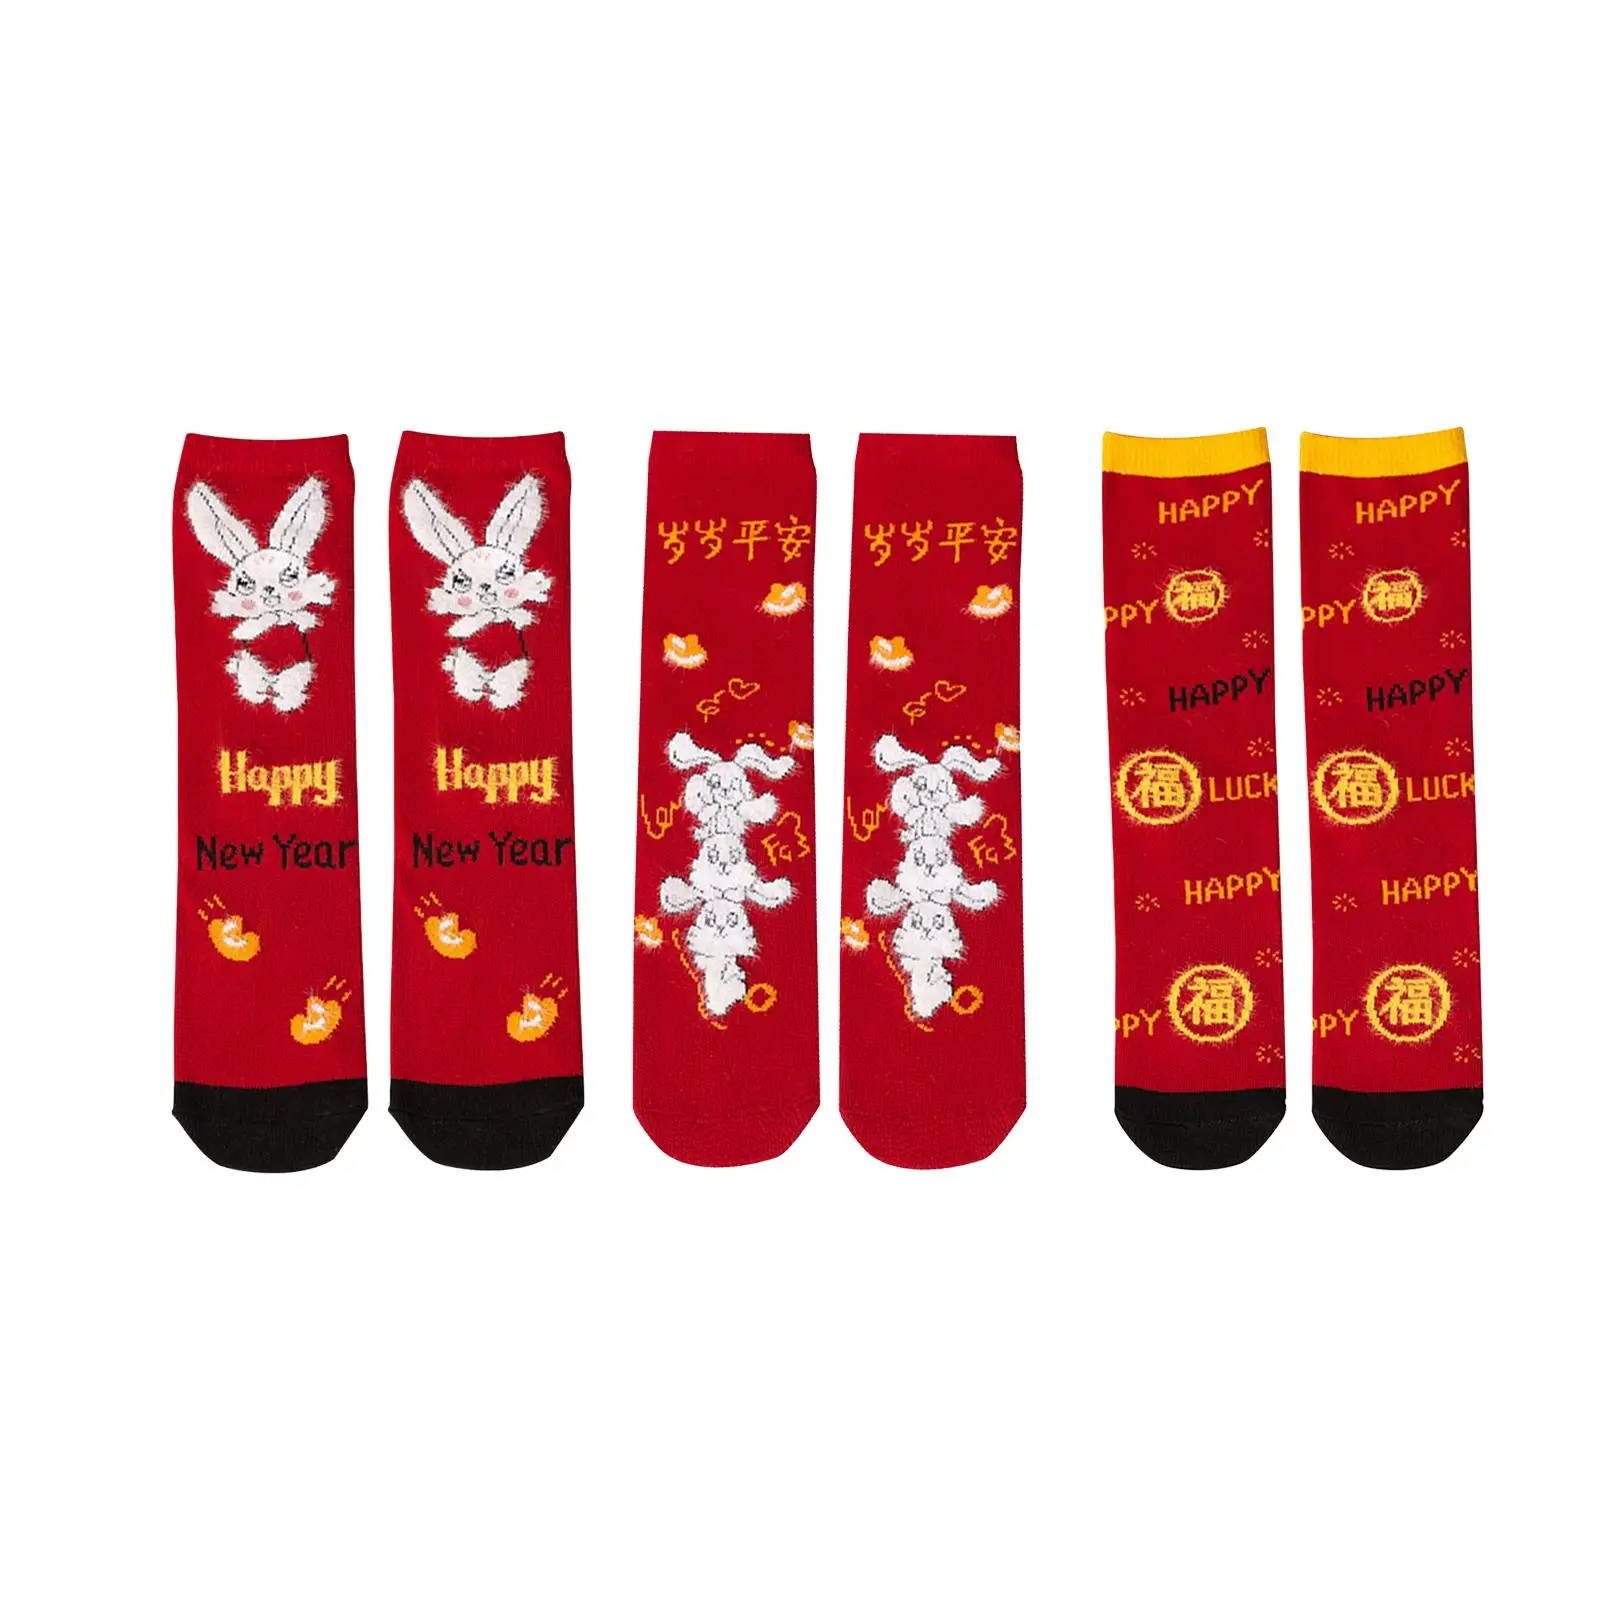 Novelty Children Socks Winter Warm Socks New Year Socks Casual Socks Dress Socks for Children Boy Girls Toddlers Birthday Gifts